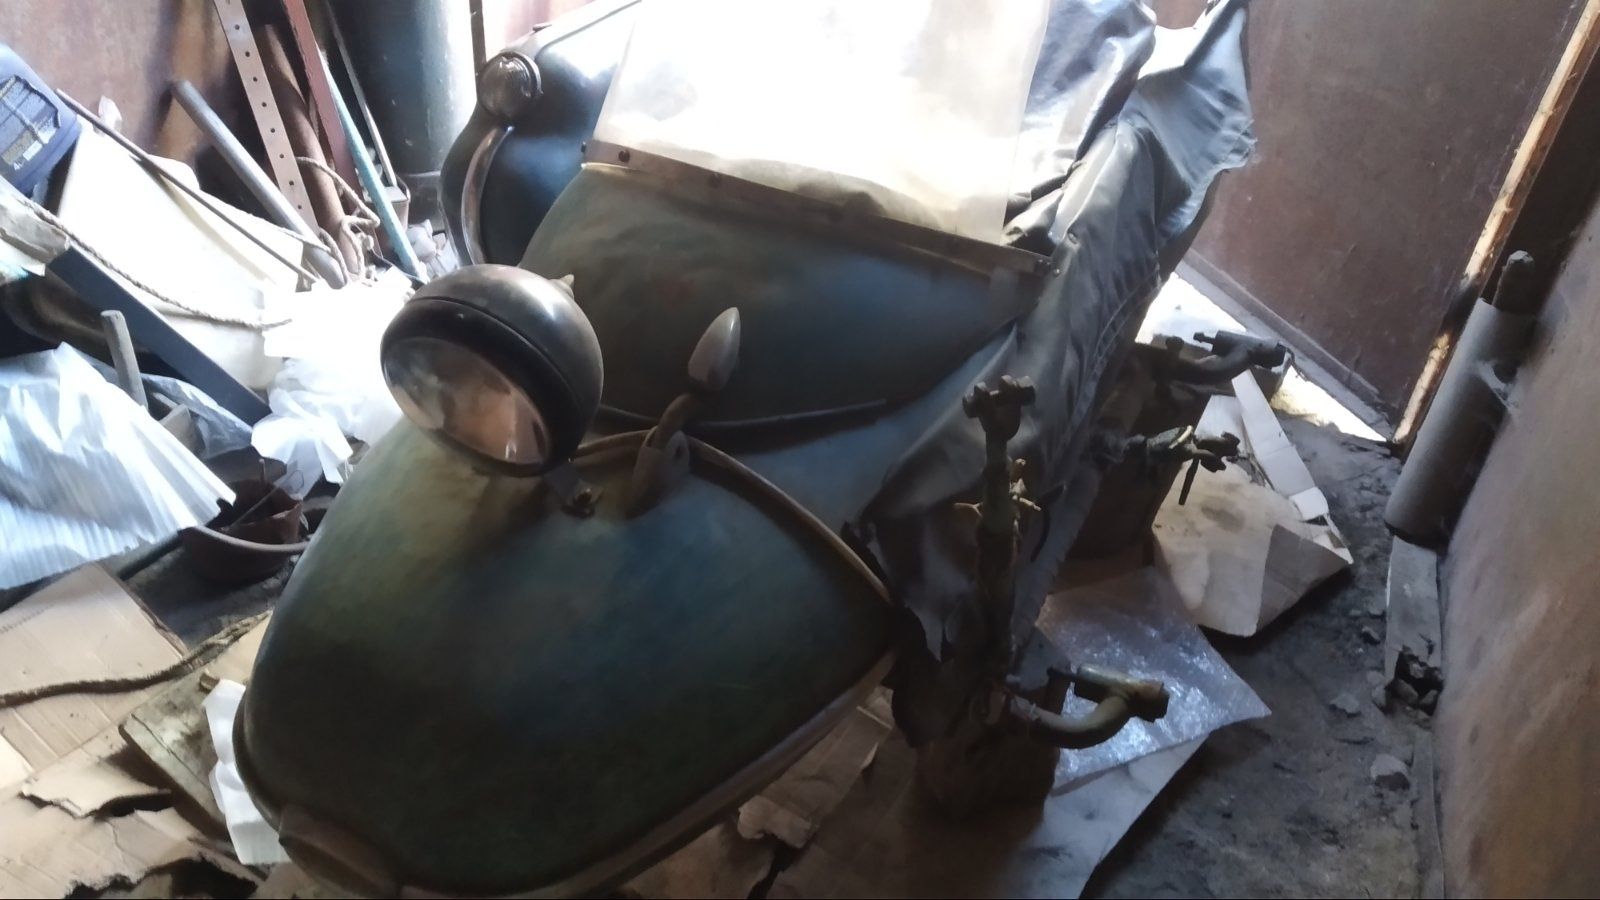 Продається мотоцикл з коляскою Іж -Юка -66 року